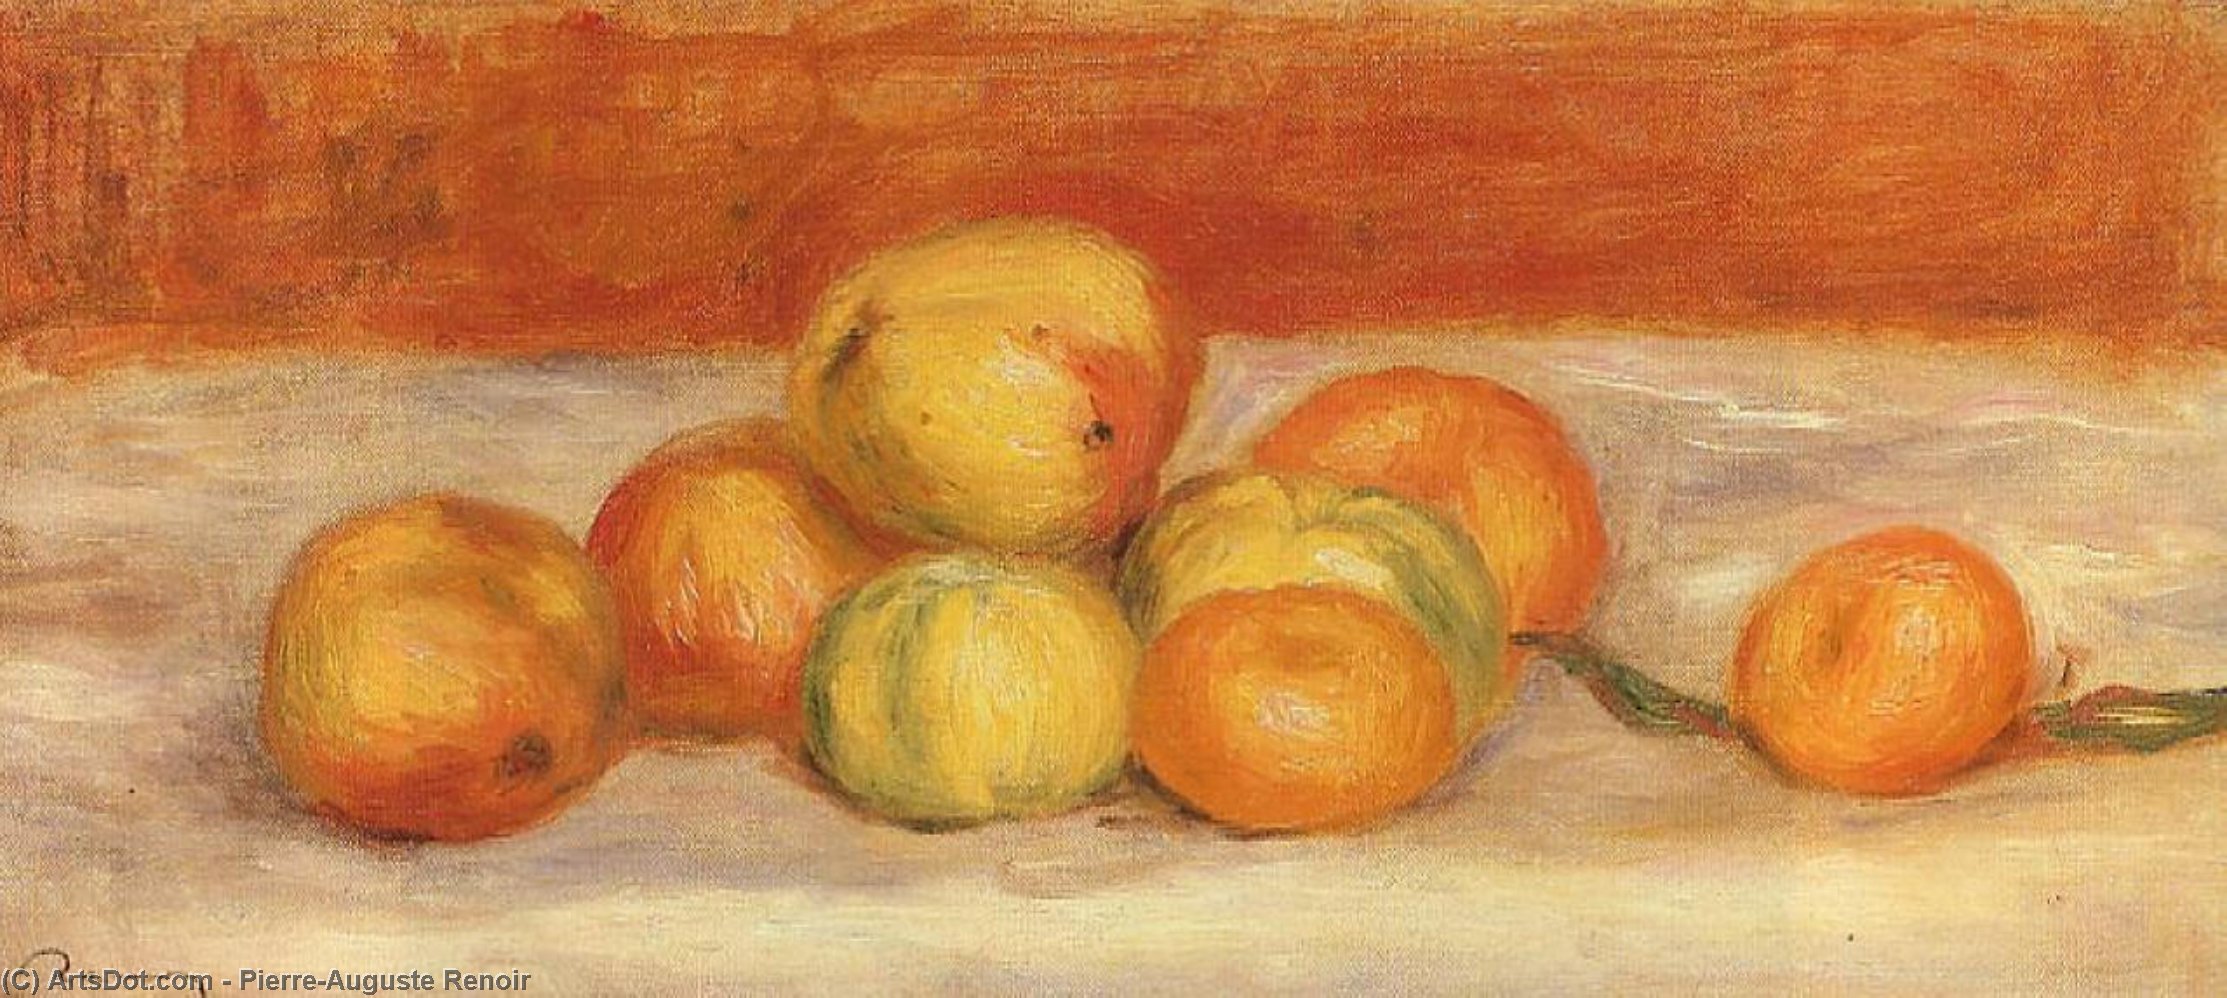 WikiOO.org - Encyclopedia of Fine Arts - Maleri, Artwork Pierre-Auguste Renoir - Apples and Manderines